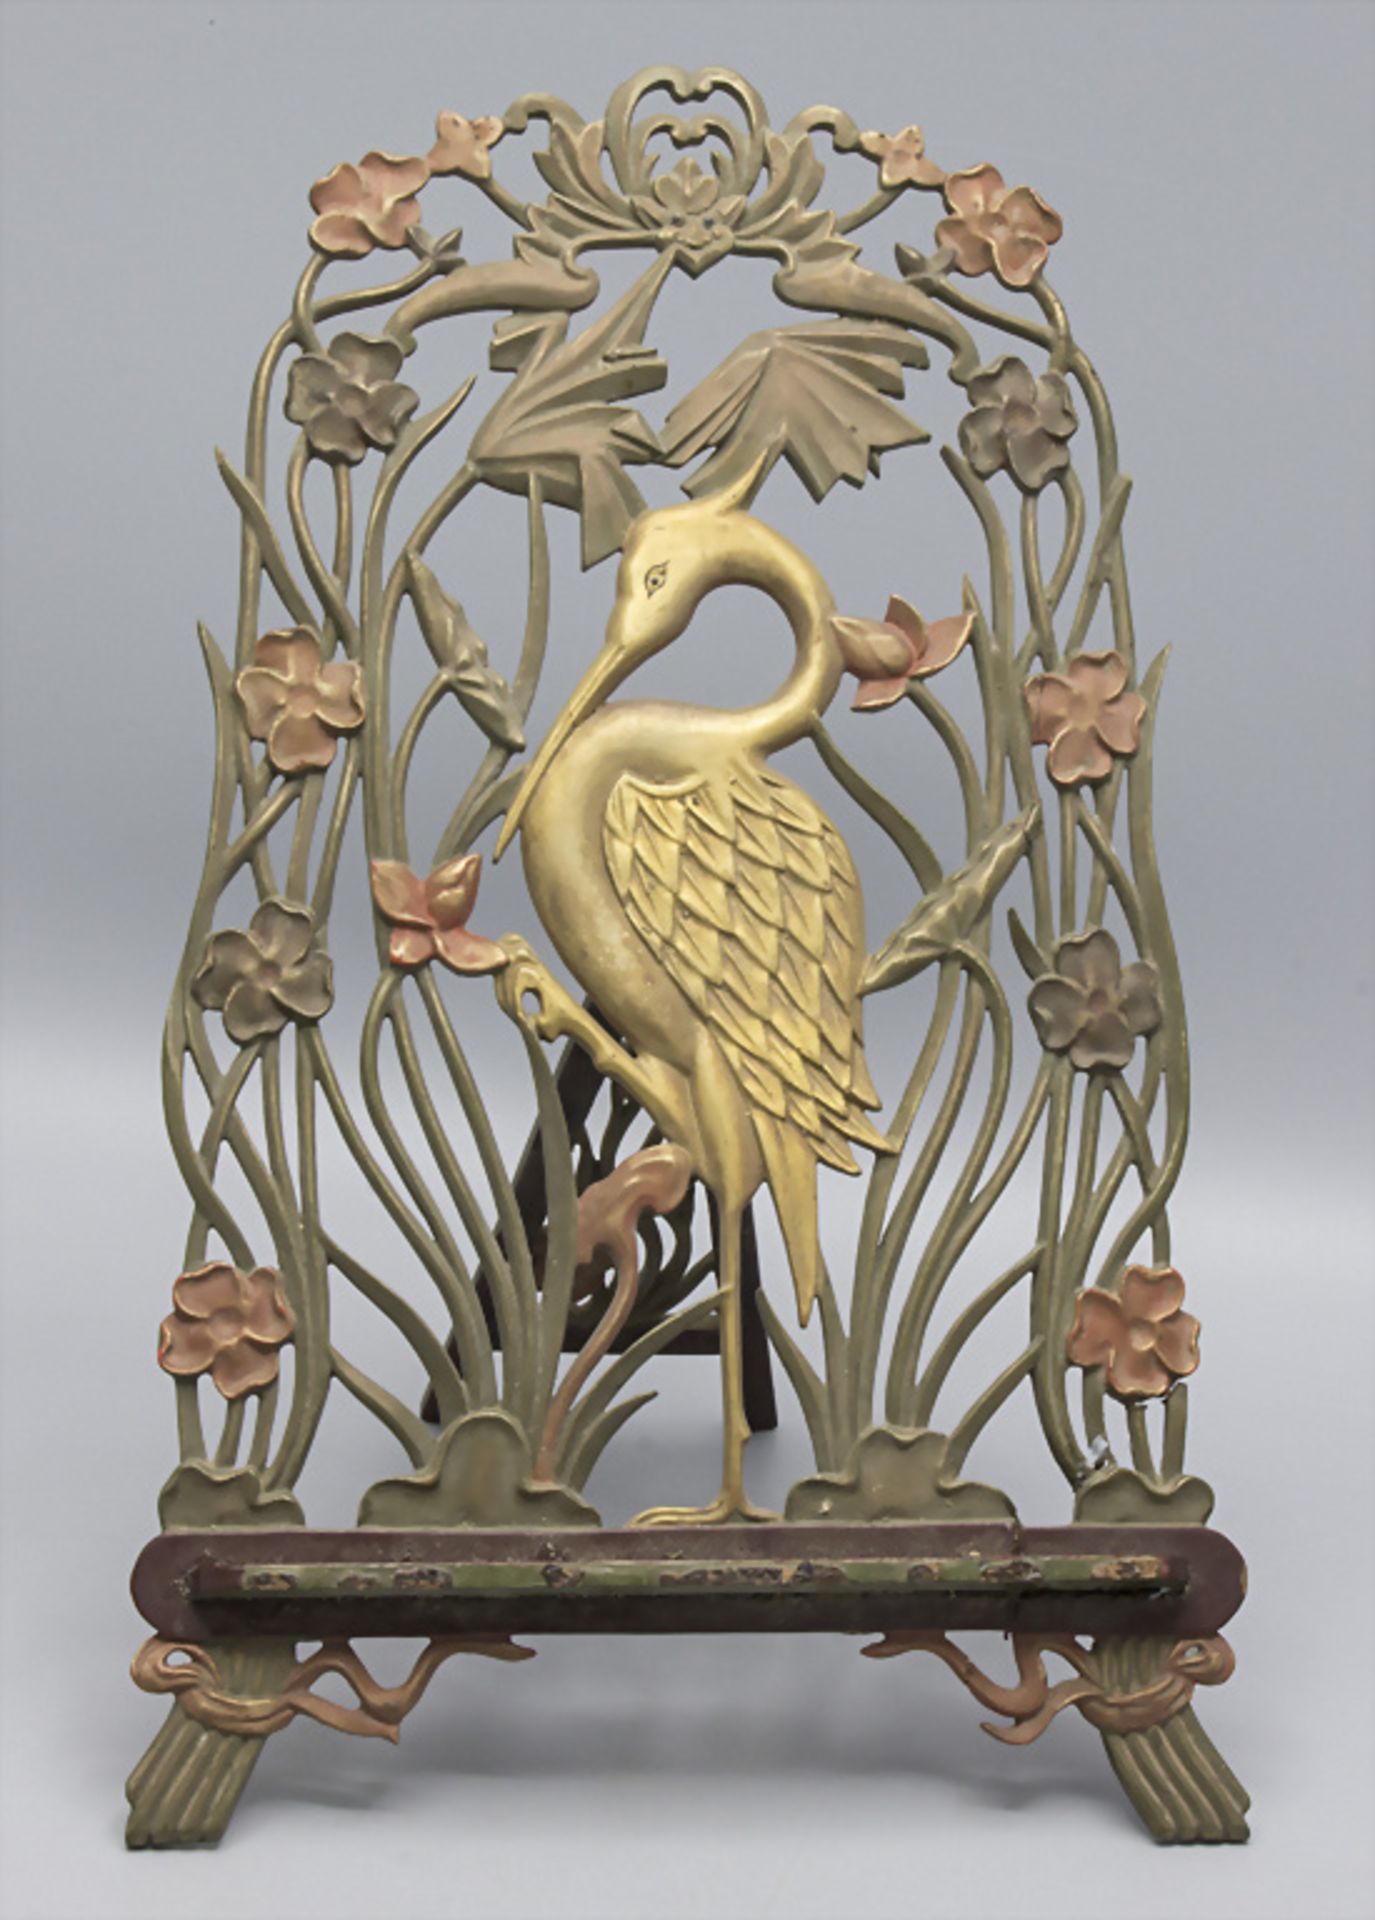 Jugendstil Bilderständer mit Storch / An Art Nouveau wooden picture stand with a stork, um 1900